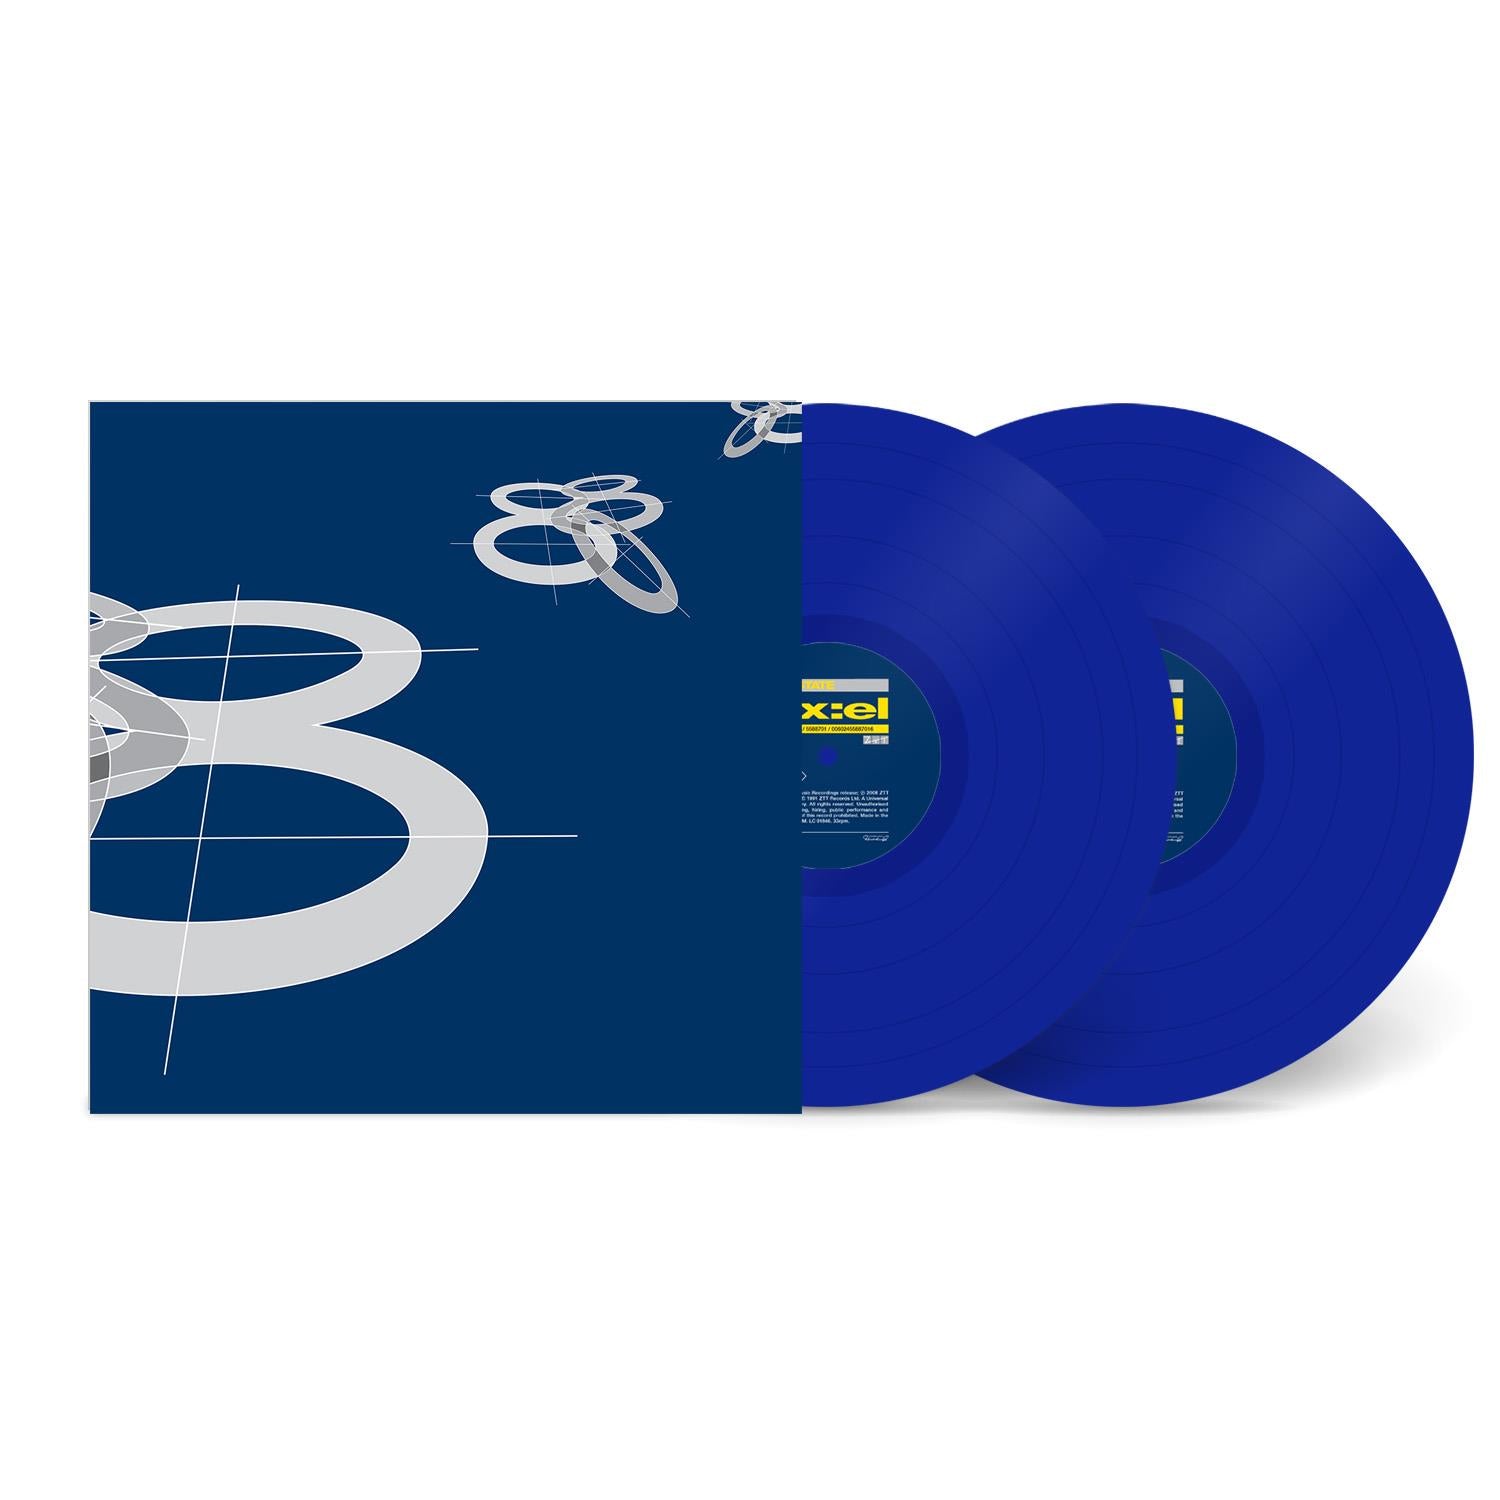 ex:el (jb hi-fi au exclusive blue vinyl)